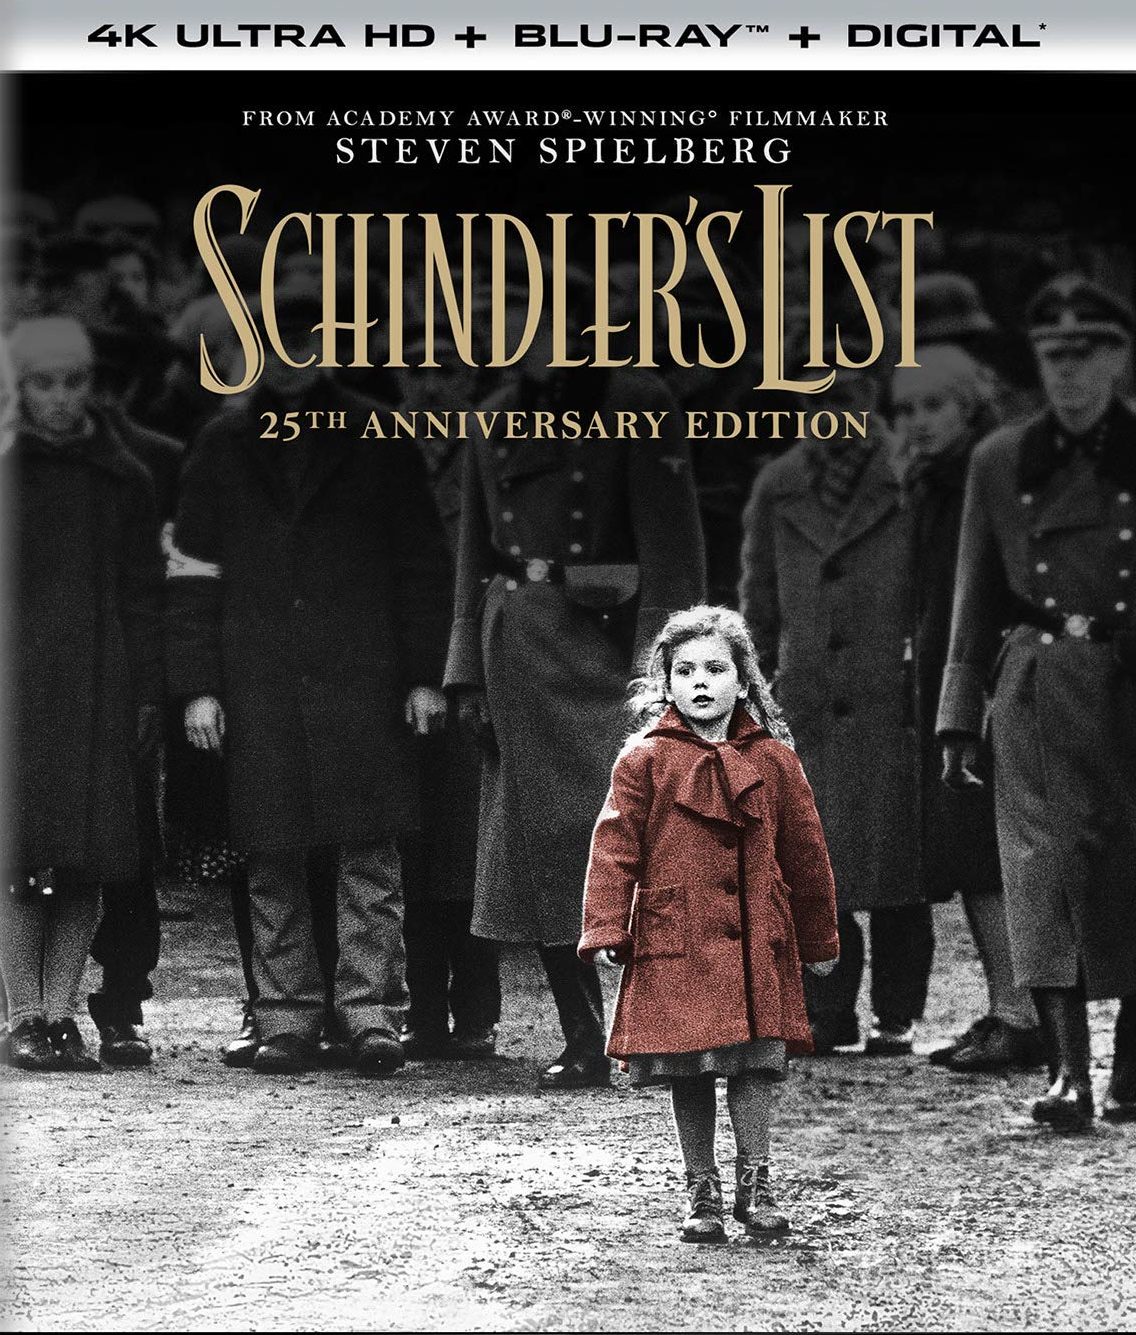 Schindler’s List (2019) ชะตากรรมที่โลกไม่ลืม